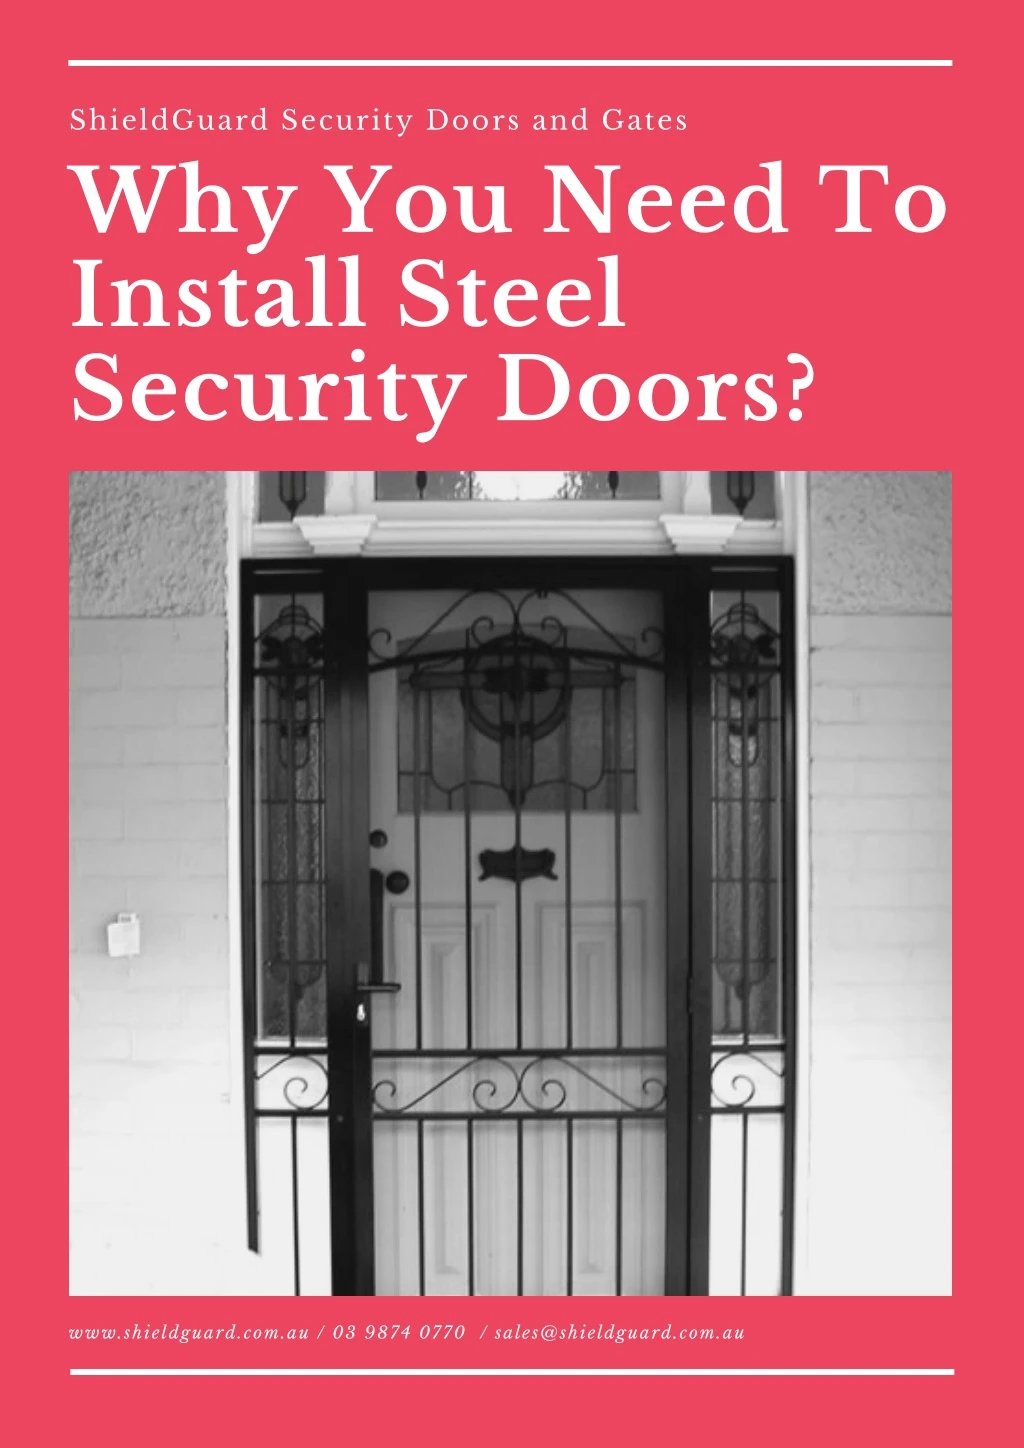 shieldguard security doors and gates